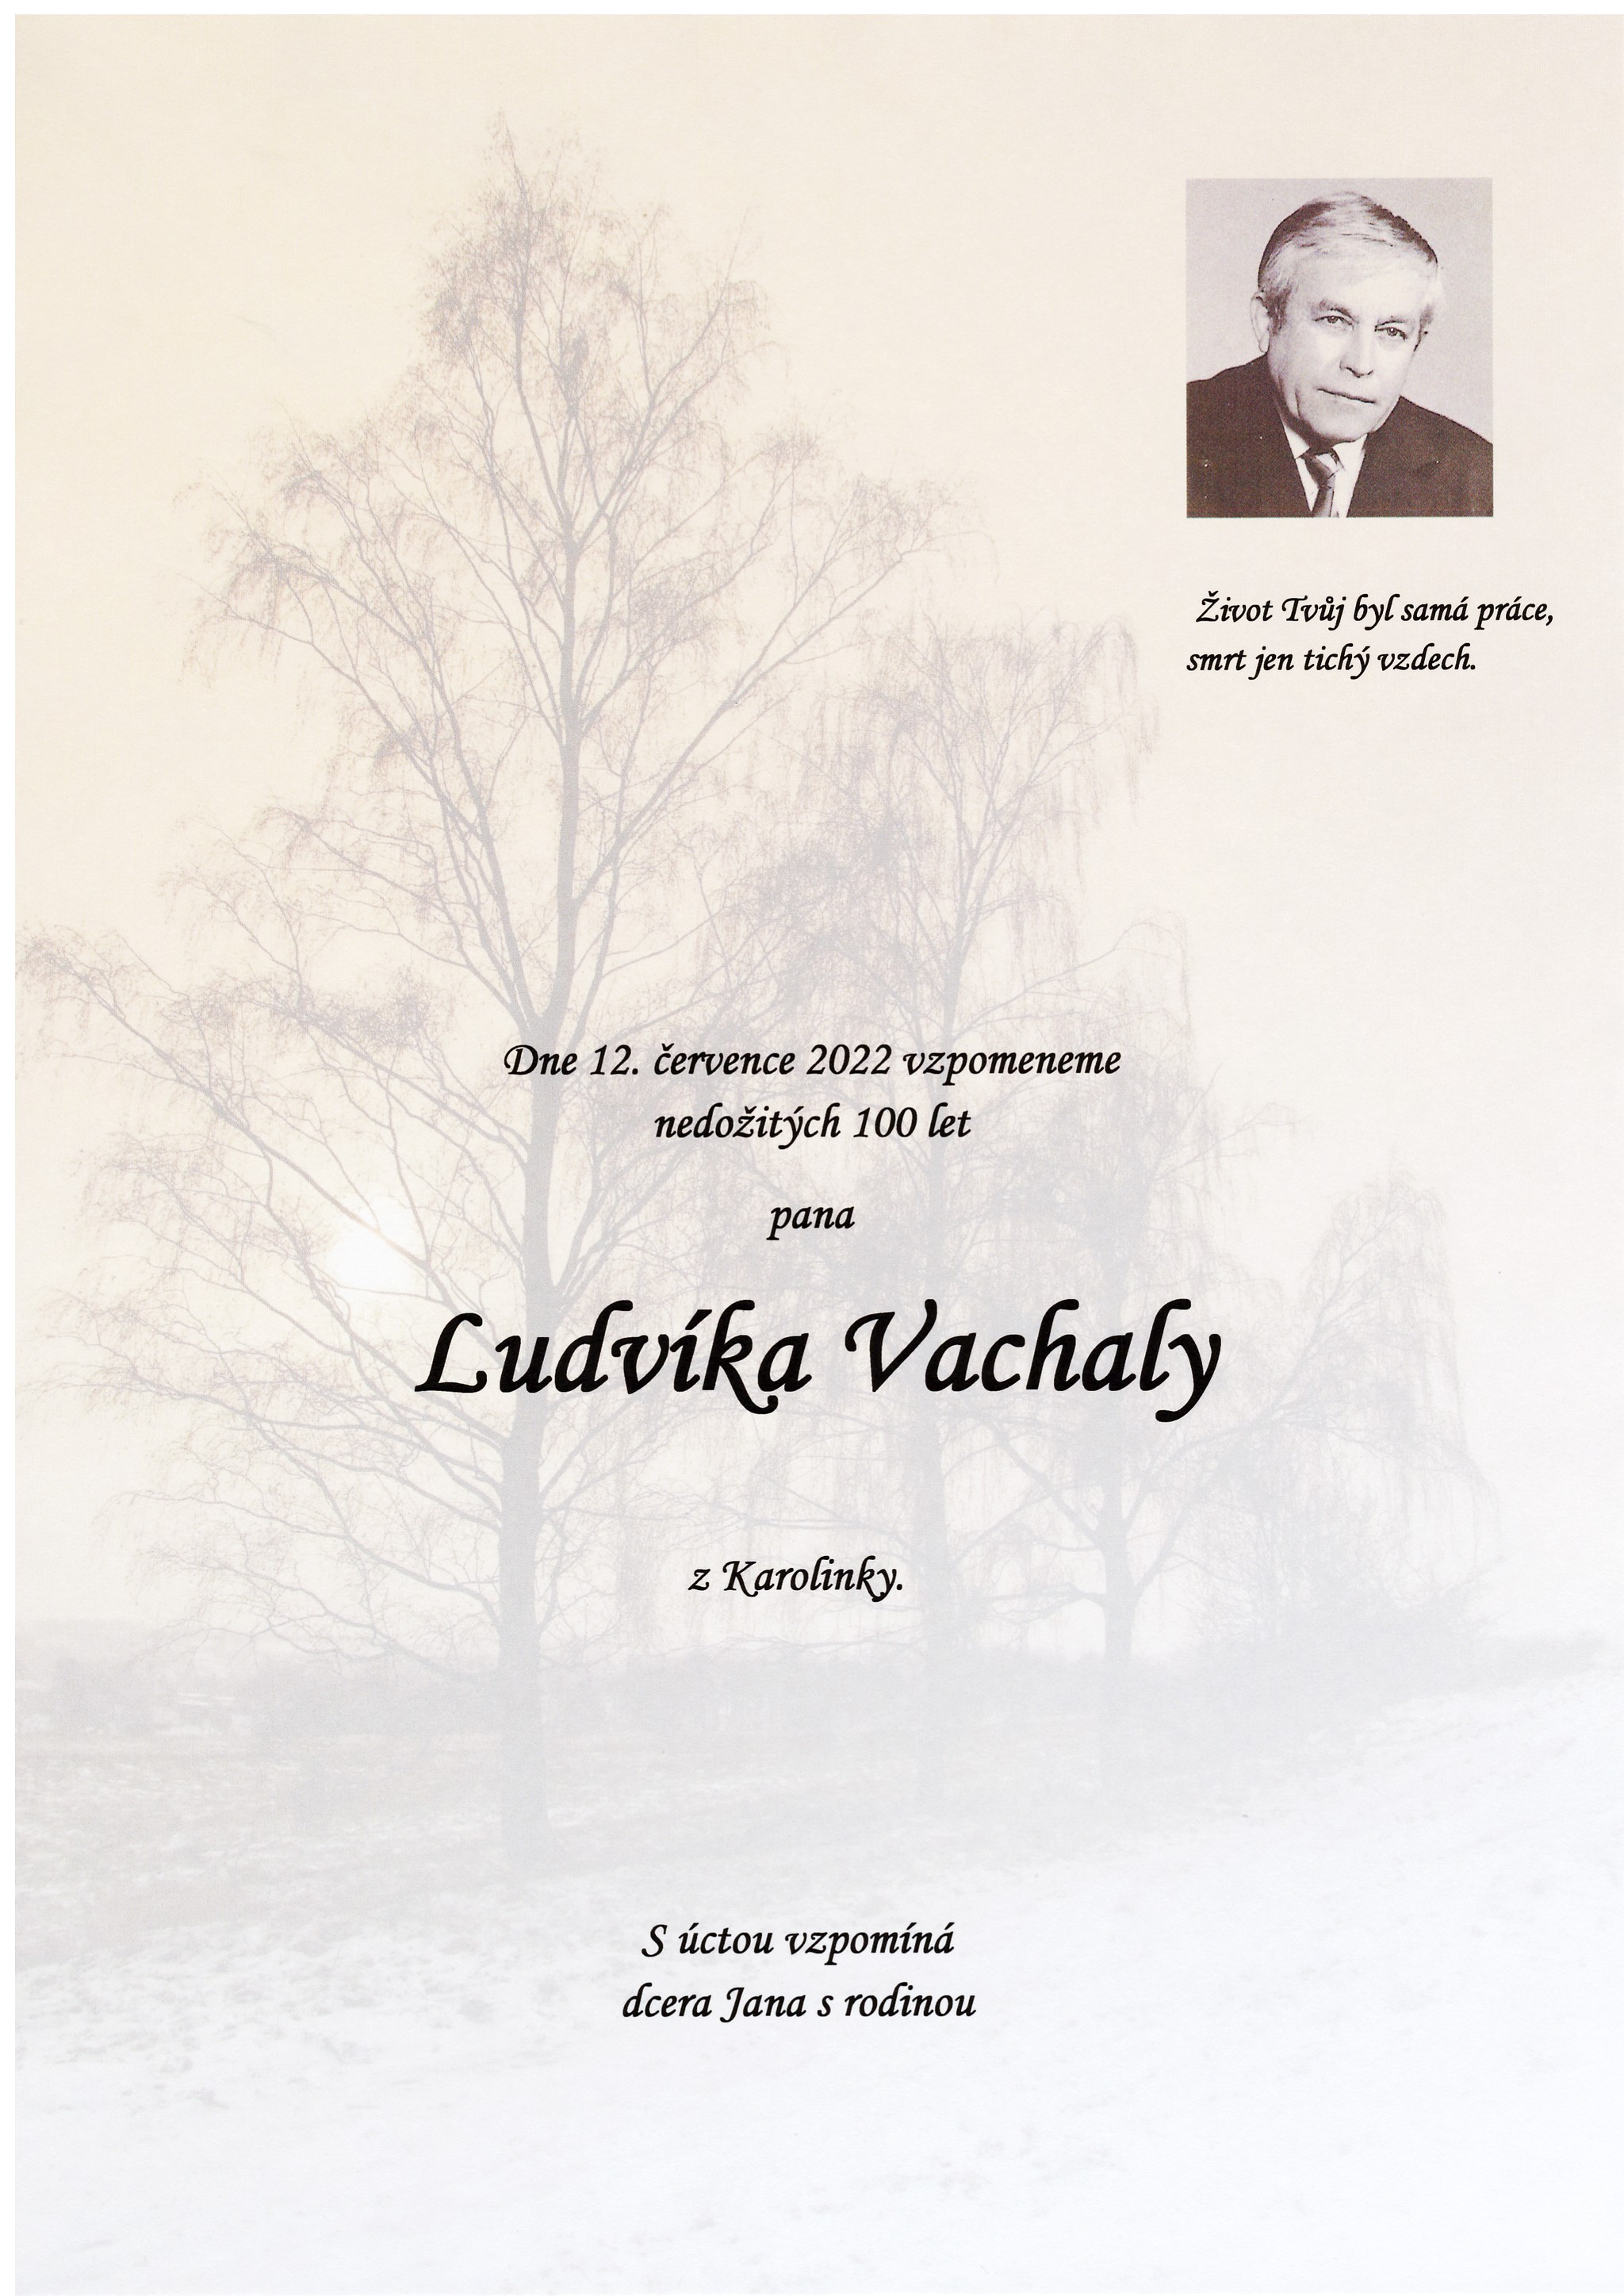 Ludvík Vachala